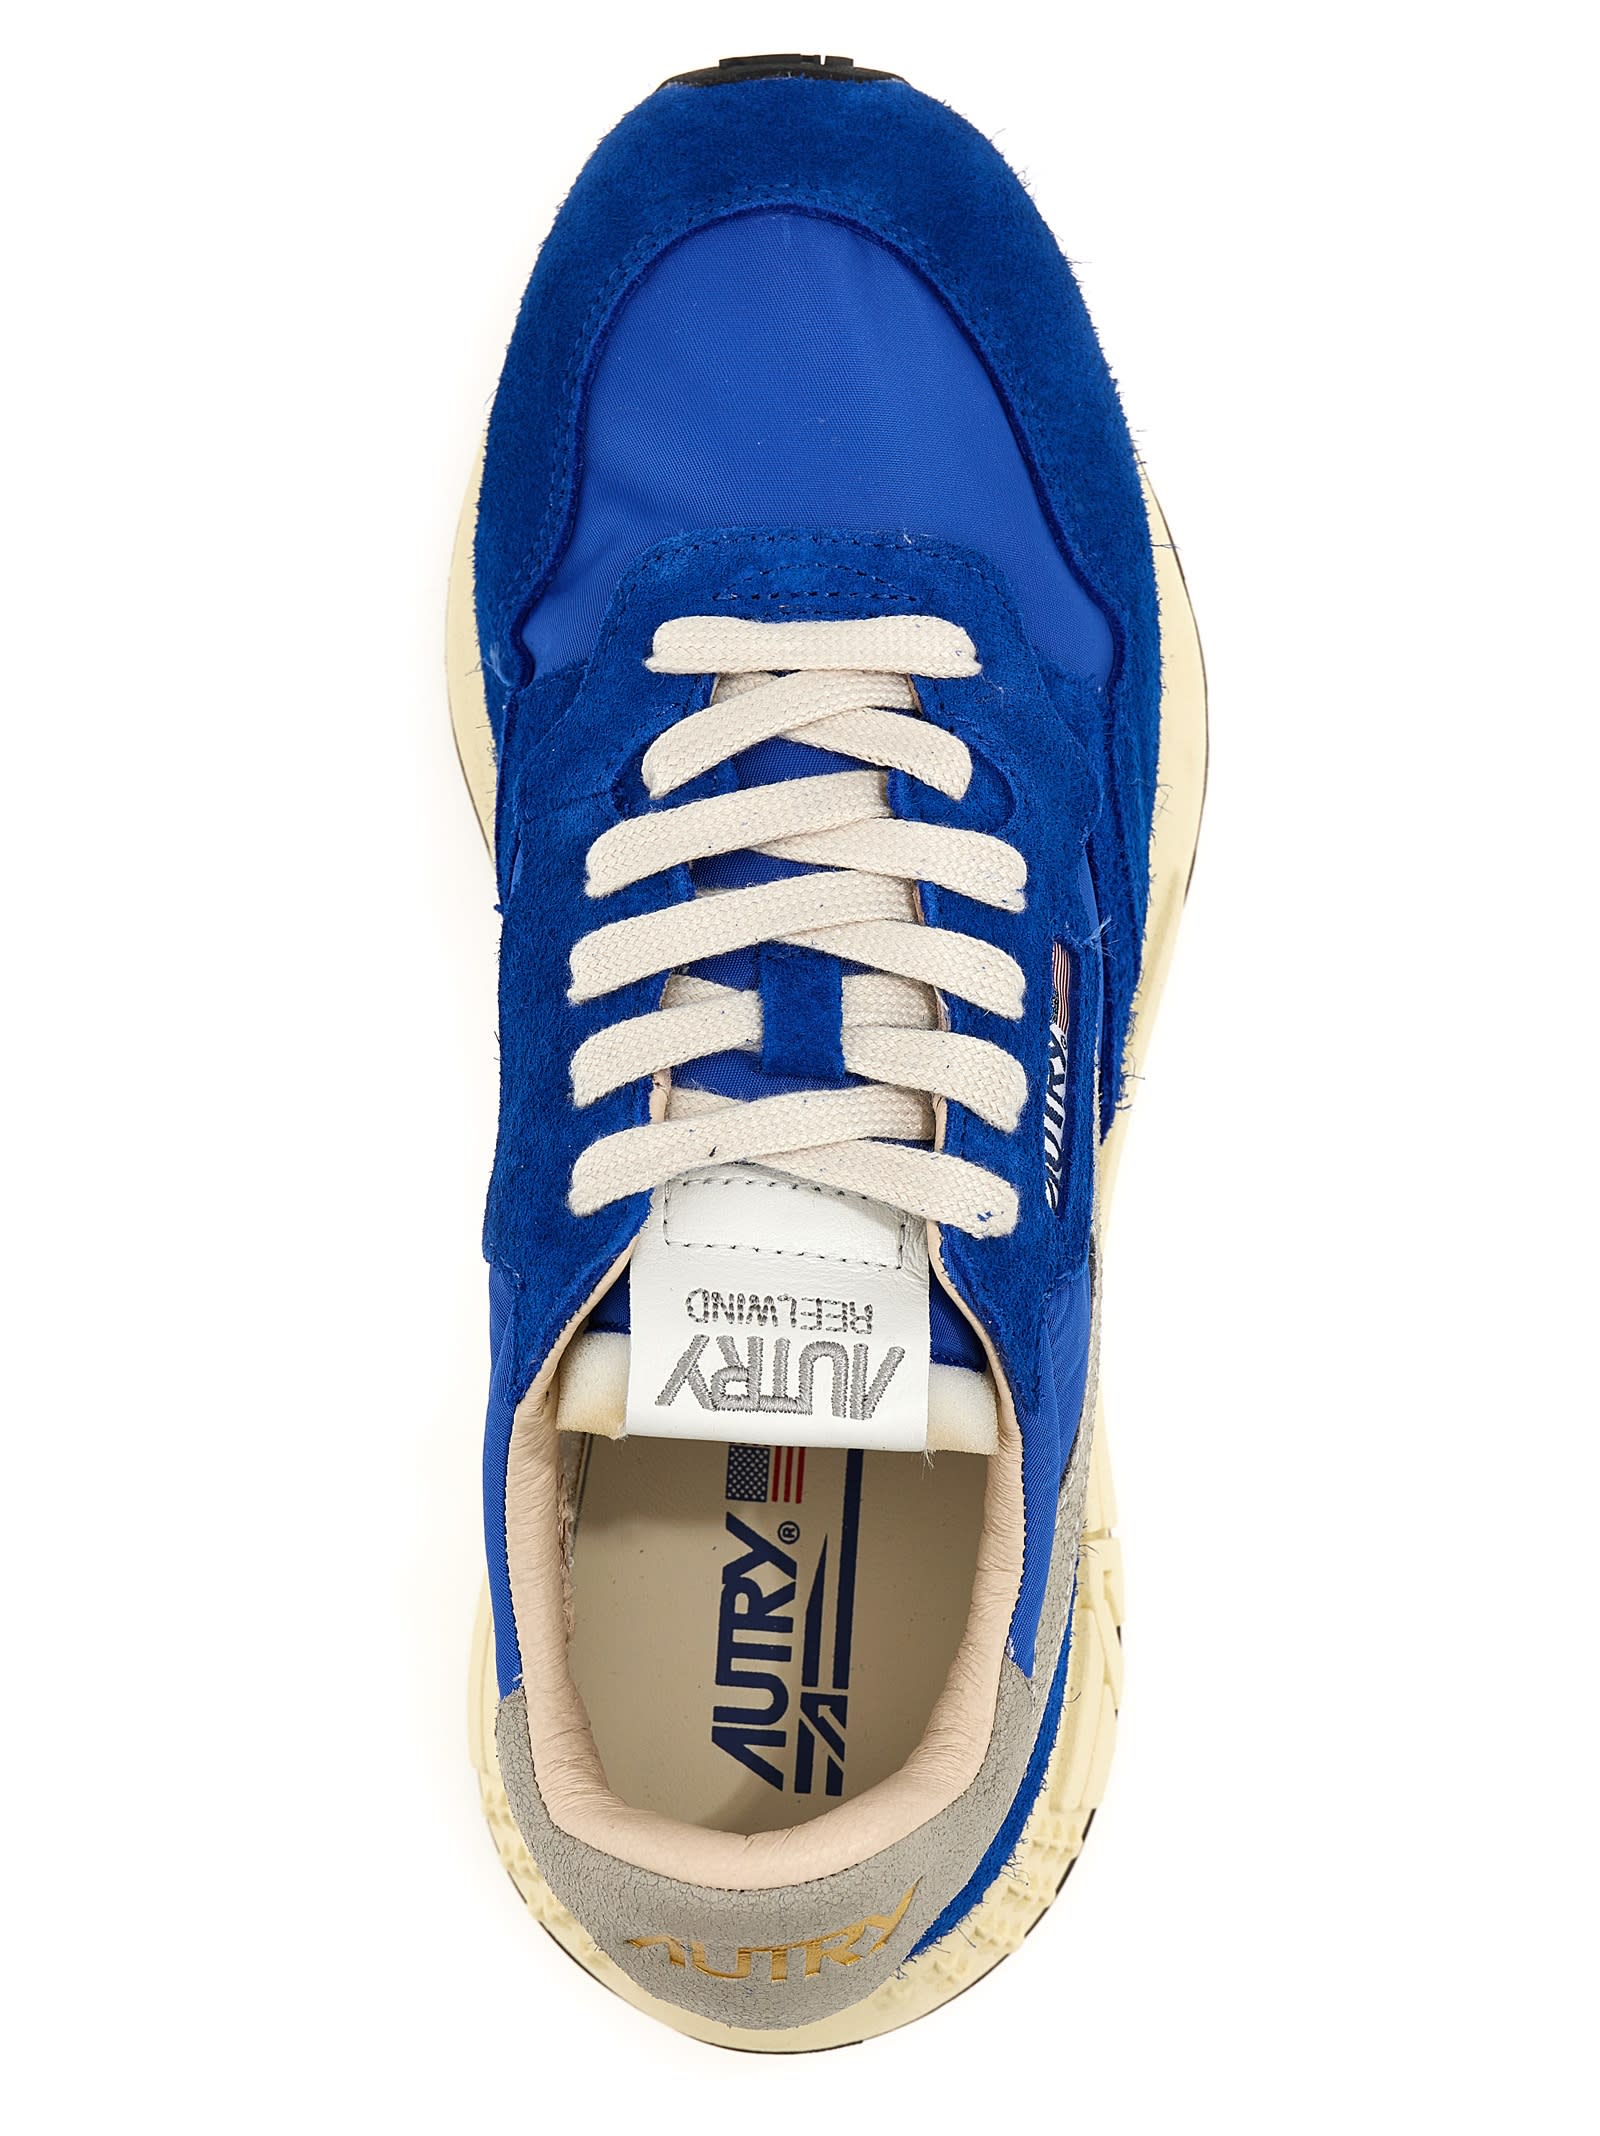 Shop Autry Reelwind Sneakers In Blue